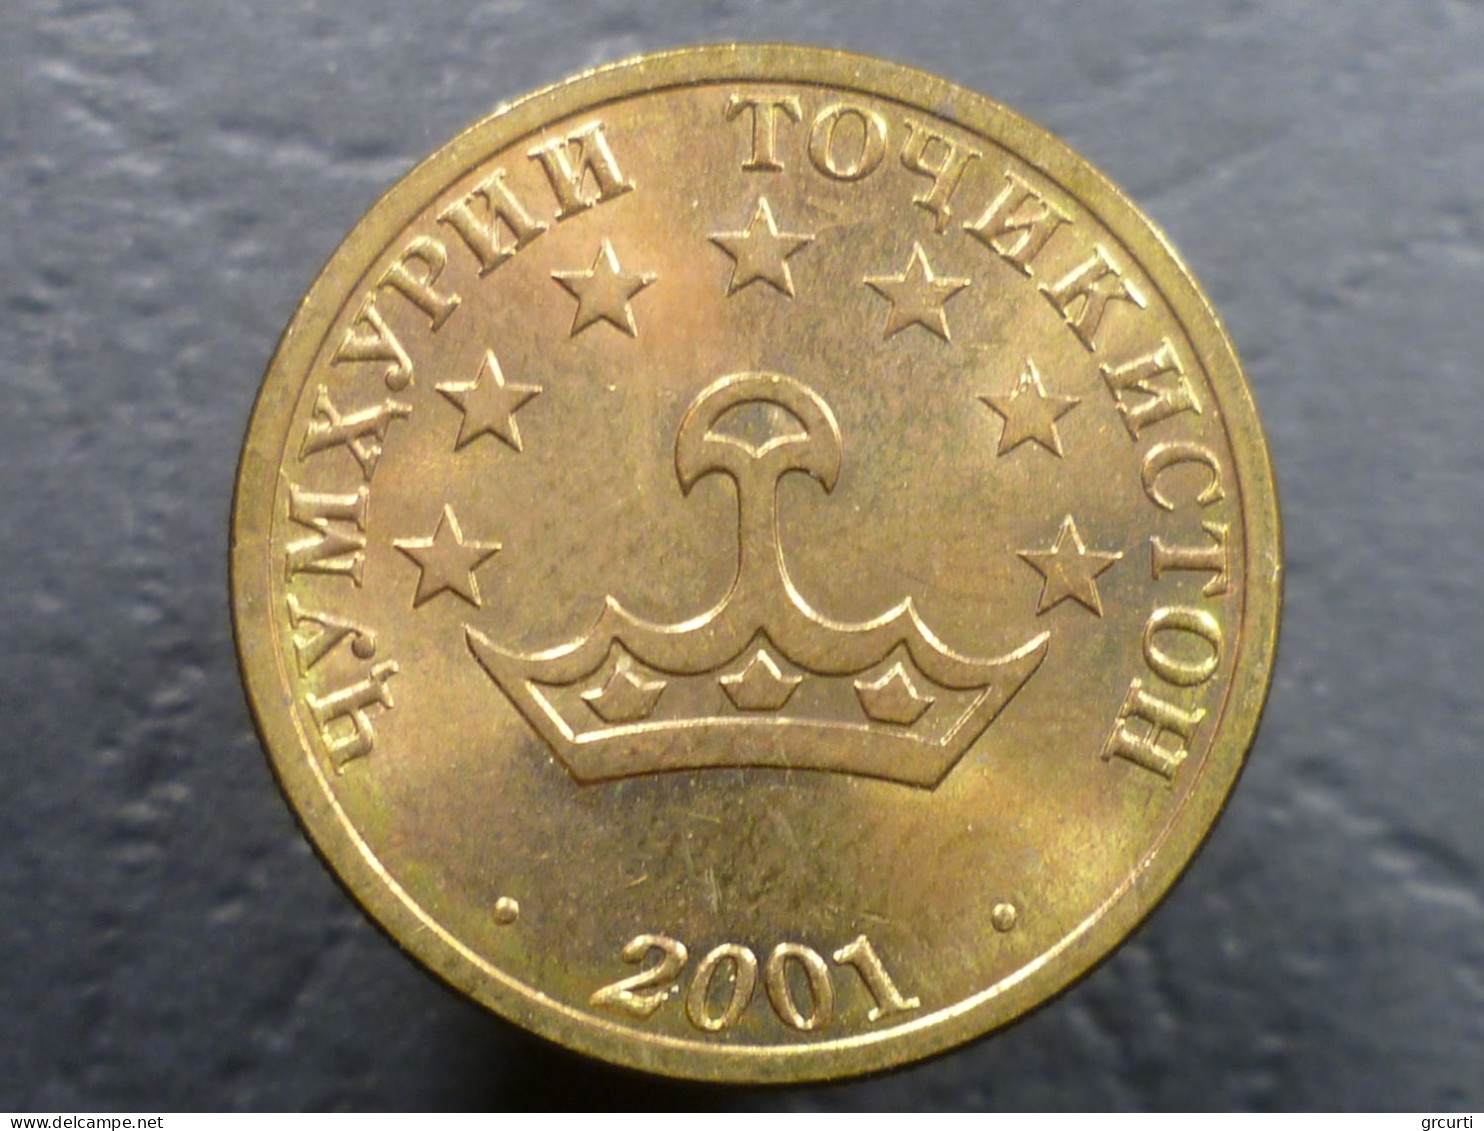 Tagikistan - Lotto di 7 monete (2001-2011)